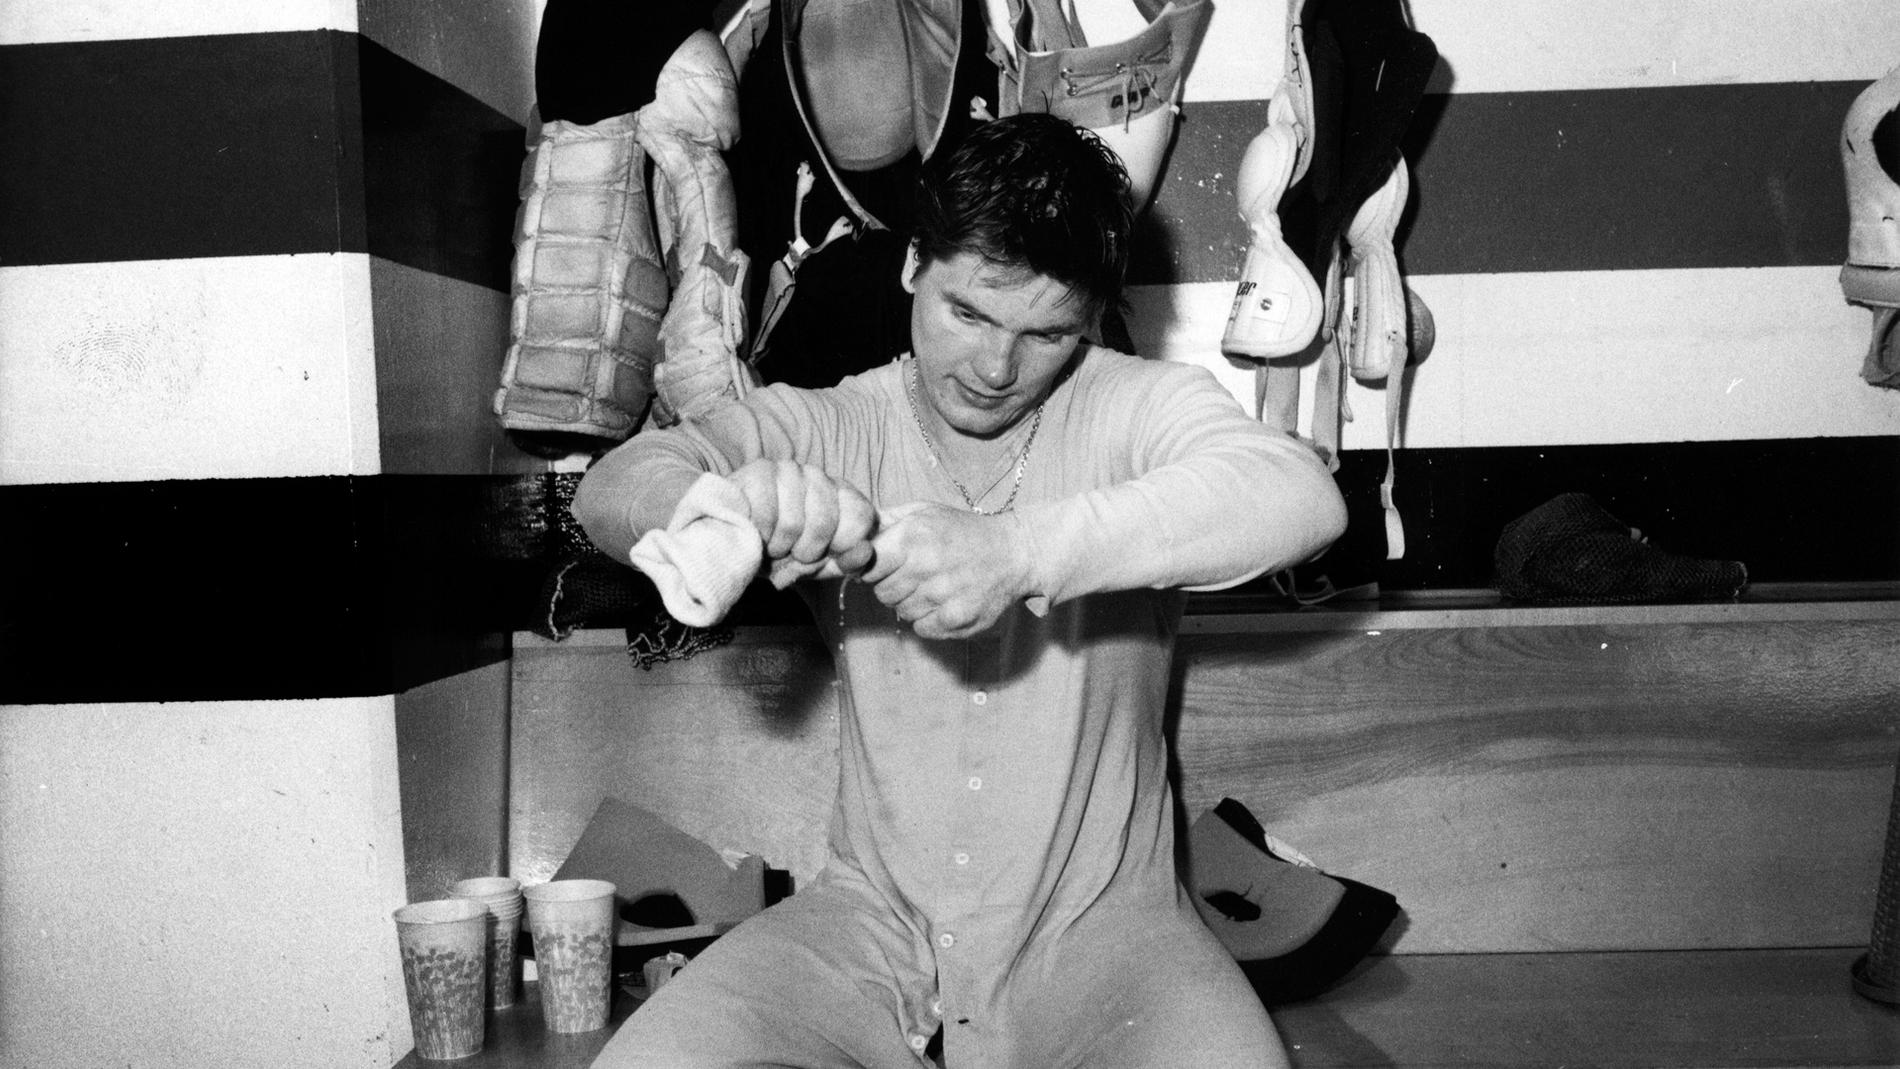 Pelle vrider ur sina blöta strumpor efter en match med Flyers i februari 1985.